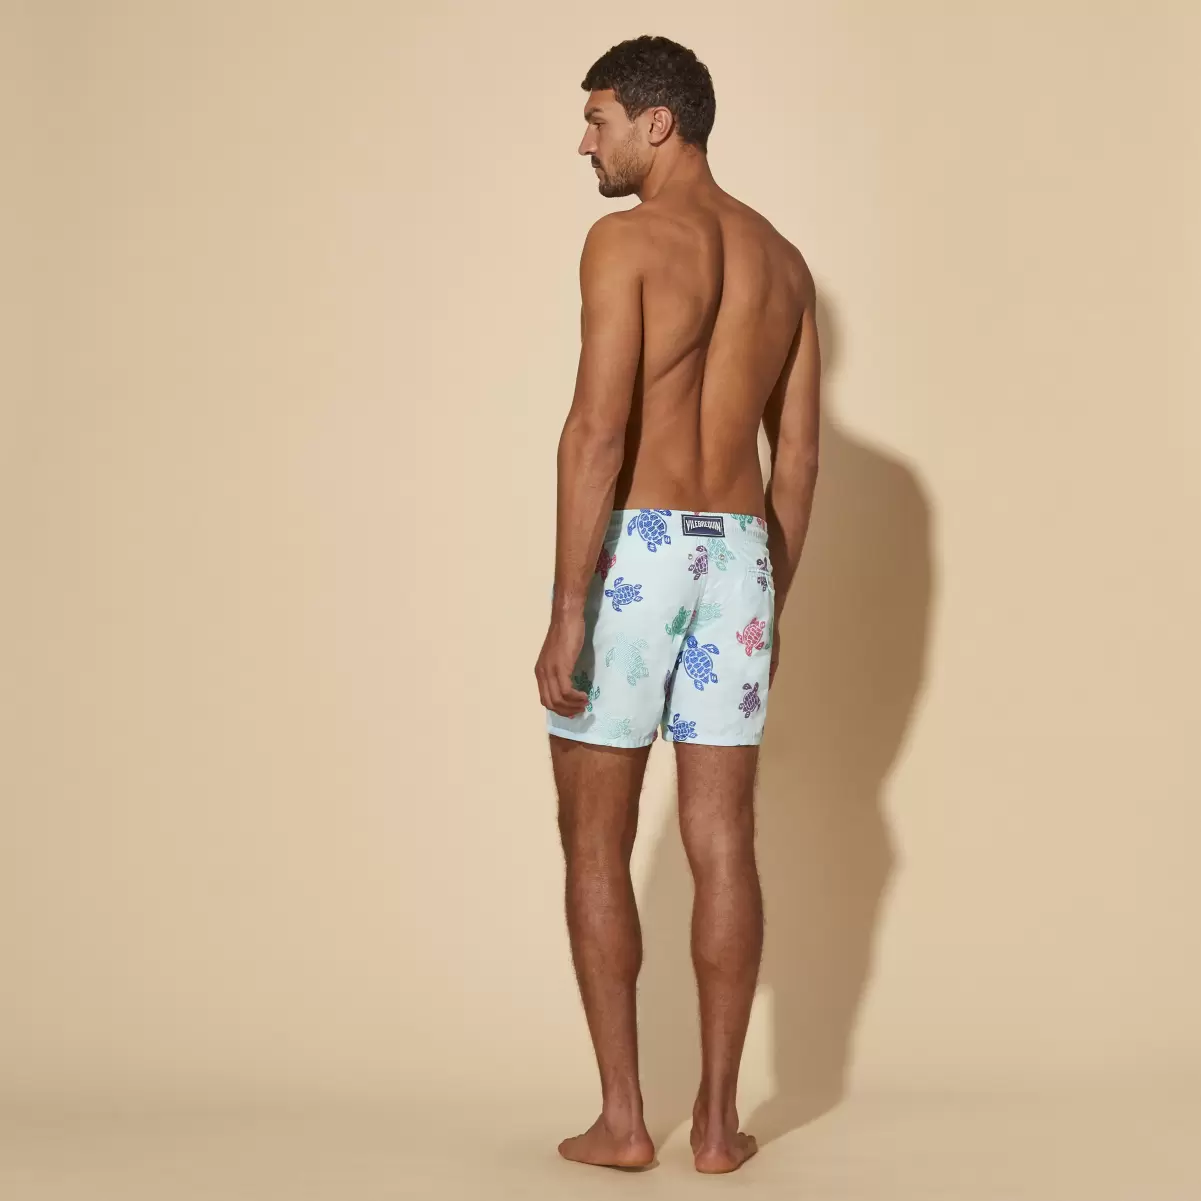 Men Swim Shorts Embroidered Tortue Multicolore - Limited Edition Thalassa / Azul Vilebrequin Económico El Bordado Hombre - 1